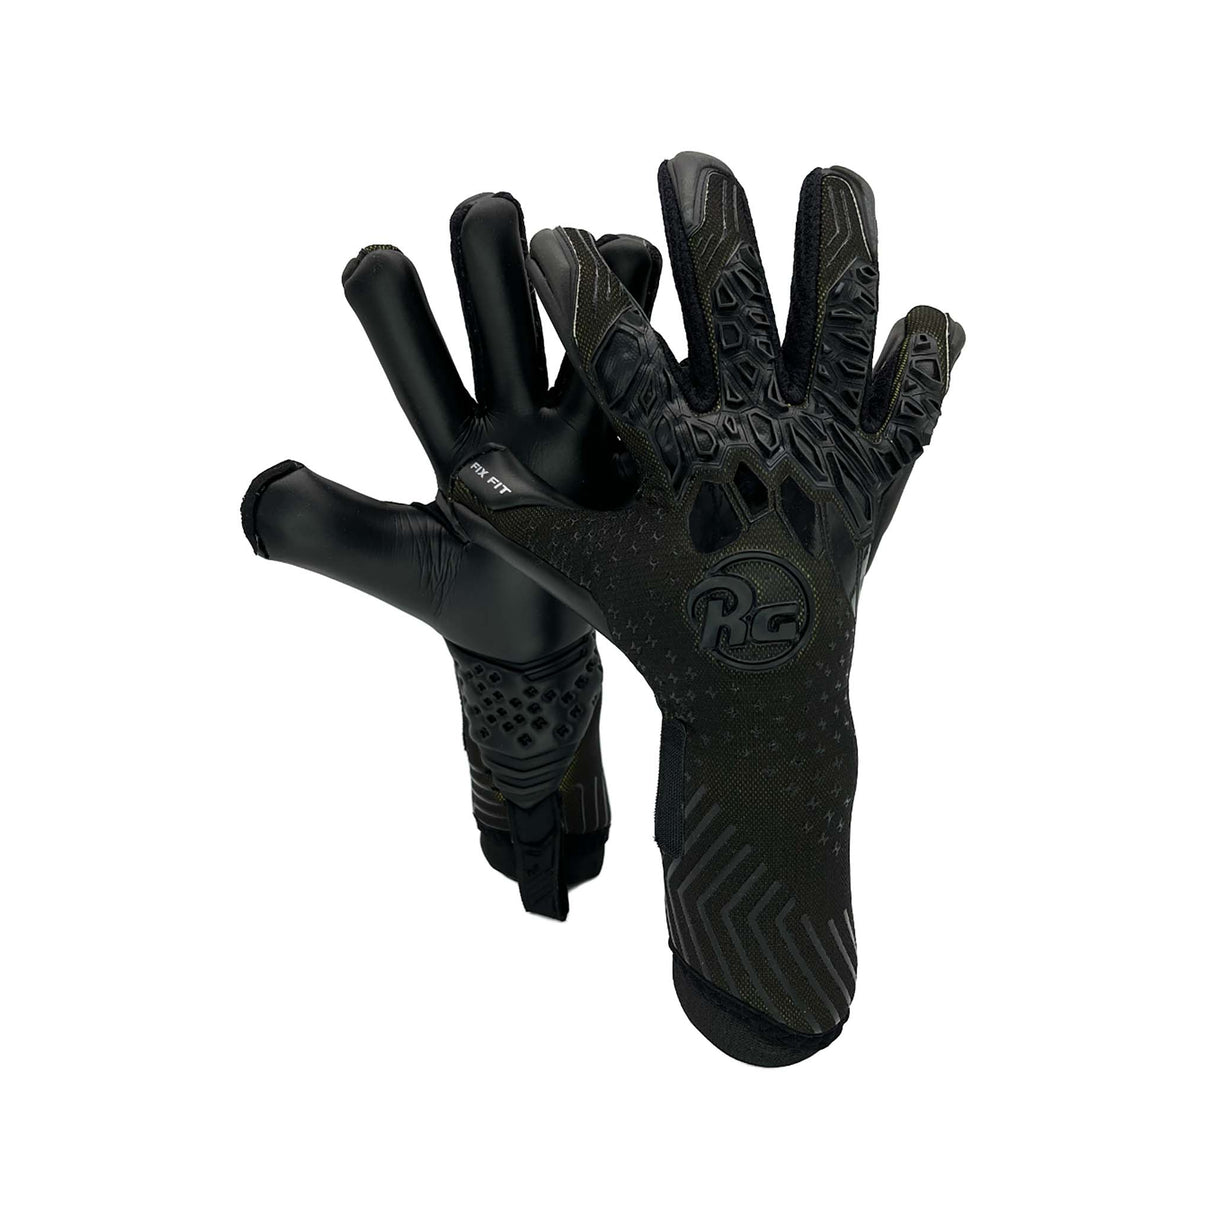 RG Goalkeeper Gloves Aversa gants de gardien de but de soccer noir paire 2